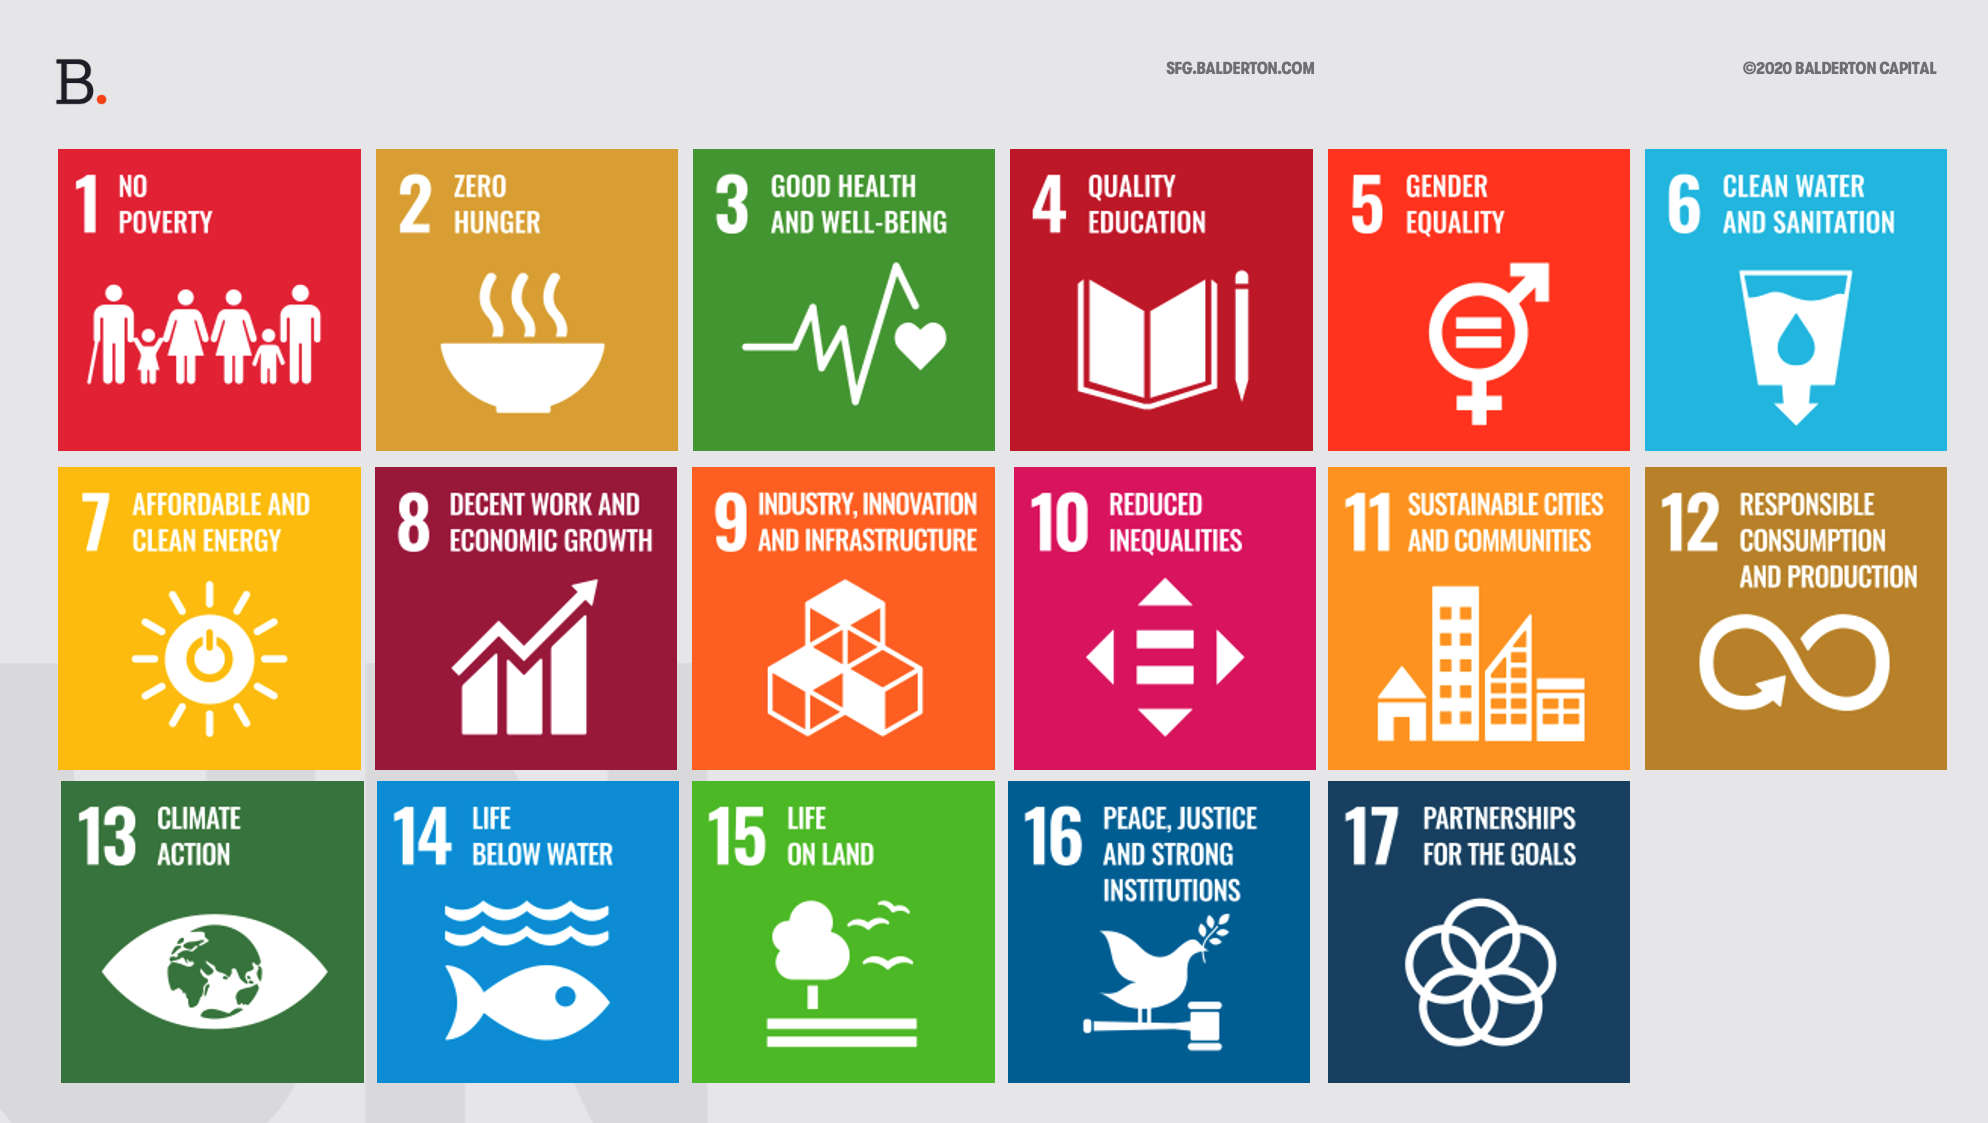 Sustainable Future Goals an ESG framework Balderton Capital